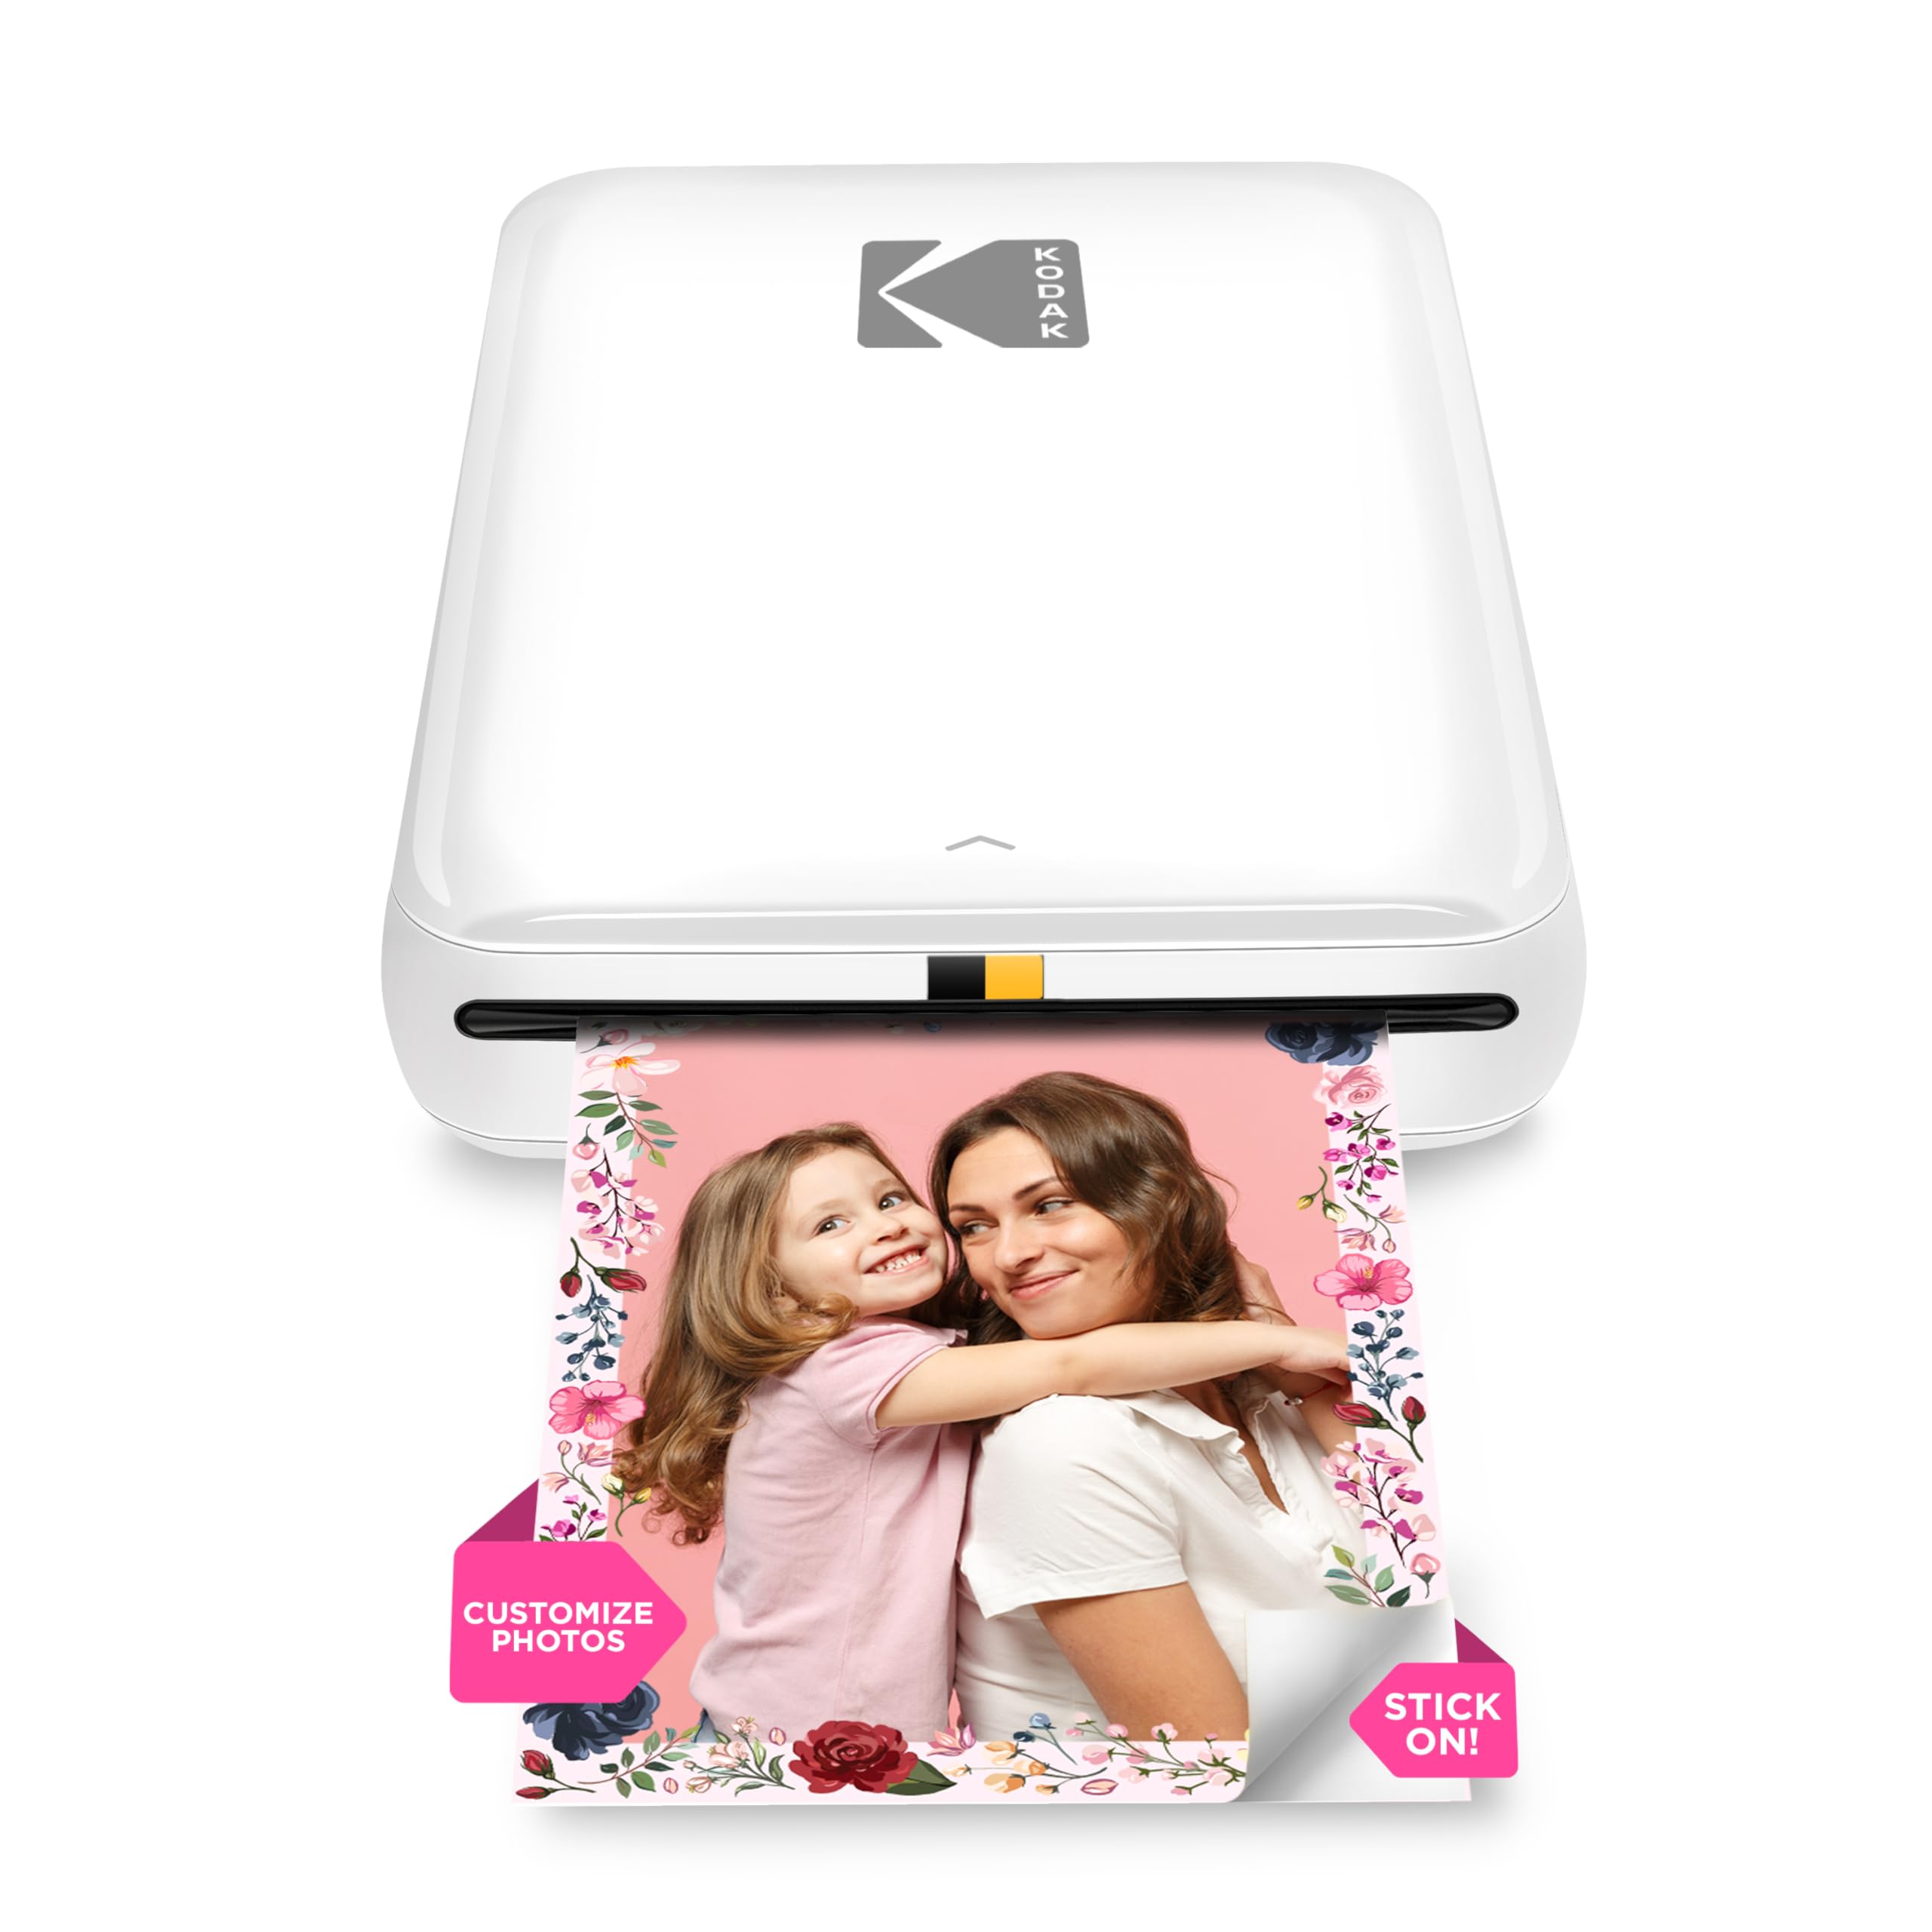 KODAK Step Drucker Drahtloser mobiler Fotodrucker mit Zink-Technologie druckt 2 × 3 Zoll große Fotos (Weiß) KODAK-App für iOS- und Android-Geräte mit Bluetooth- oder NFC-Smart-Gerät.